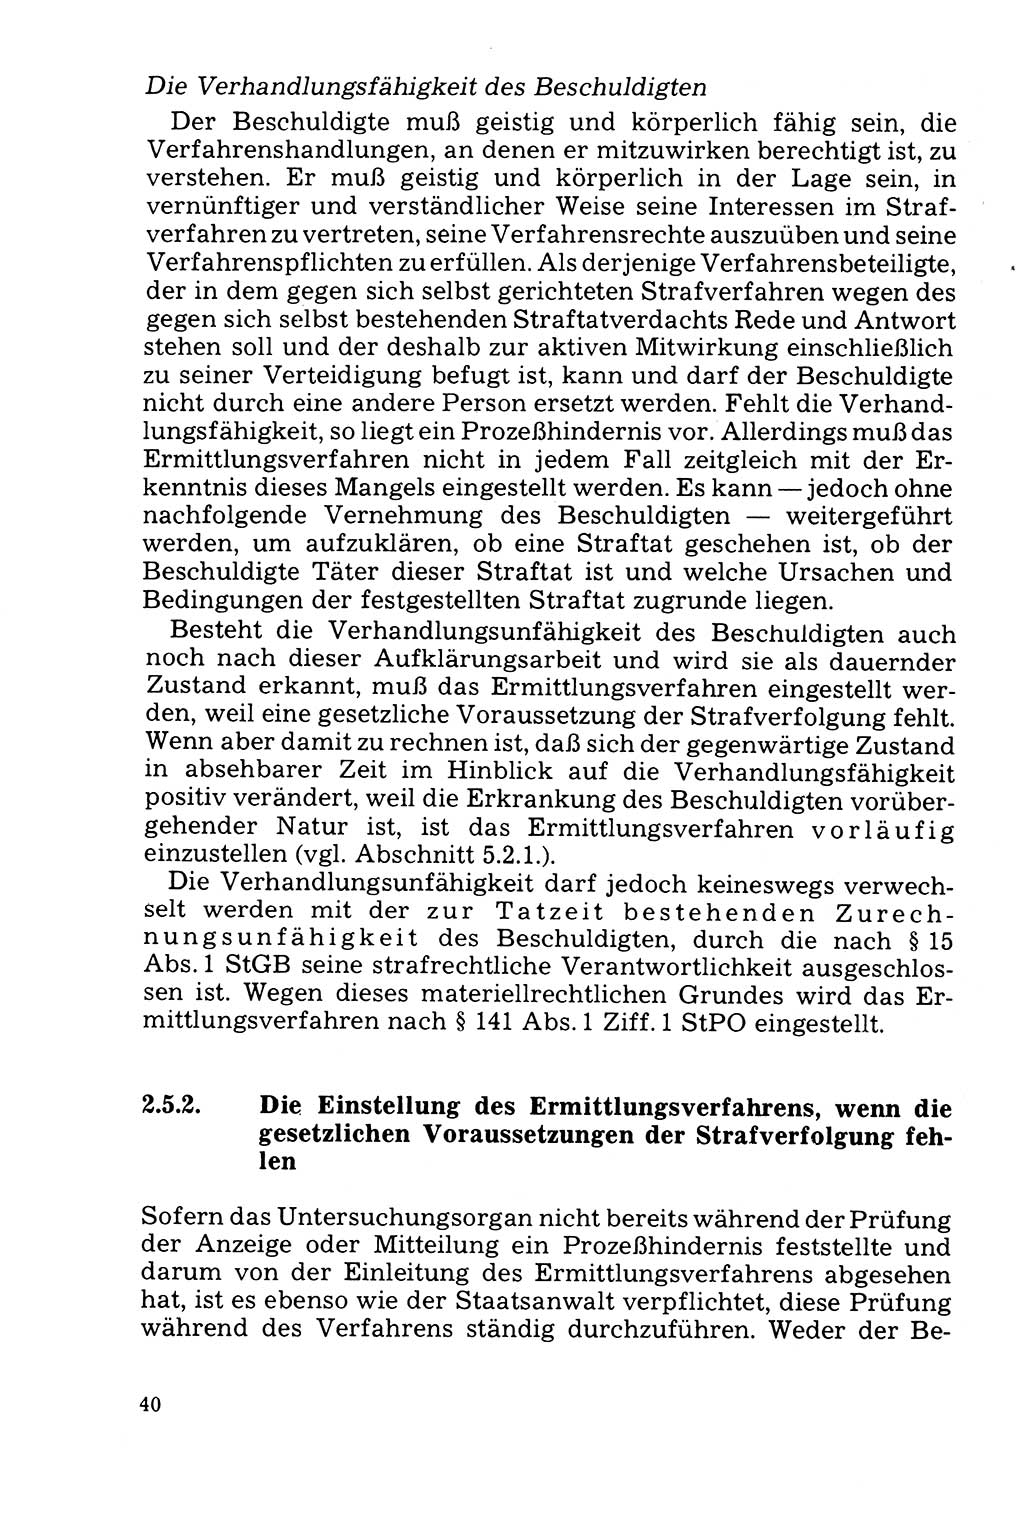 Der Abschluß des Ermittlungsverfahrens [Deutsche Demokratische Republik (DDR)] 1978, Seite 40 (Abschl. EV DDR 1978, S. 40)